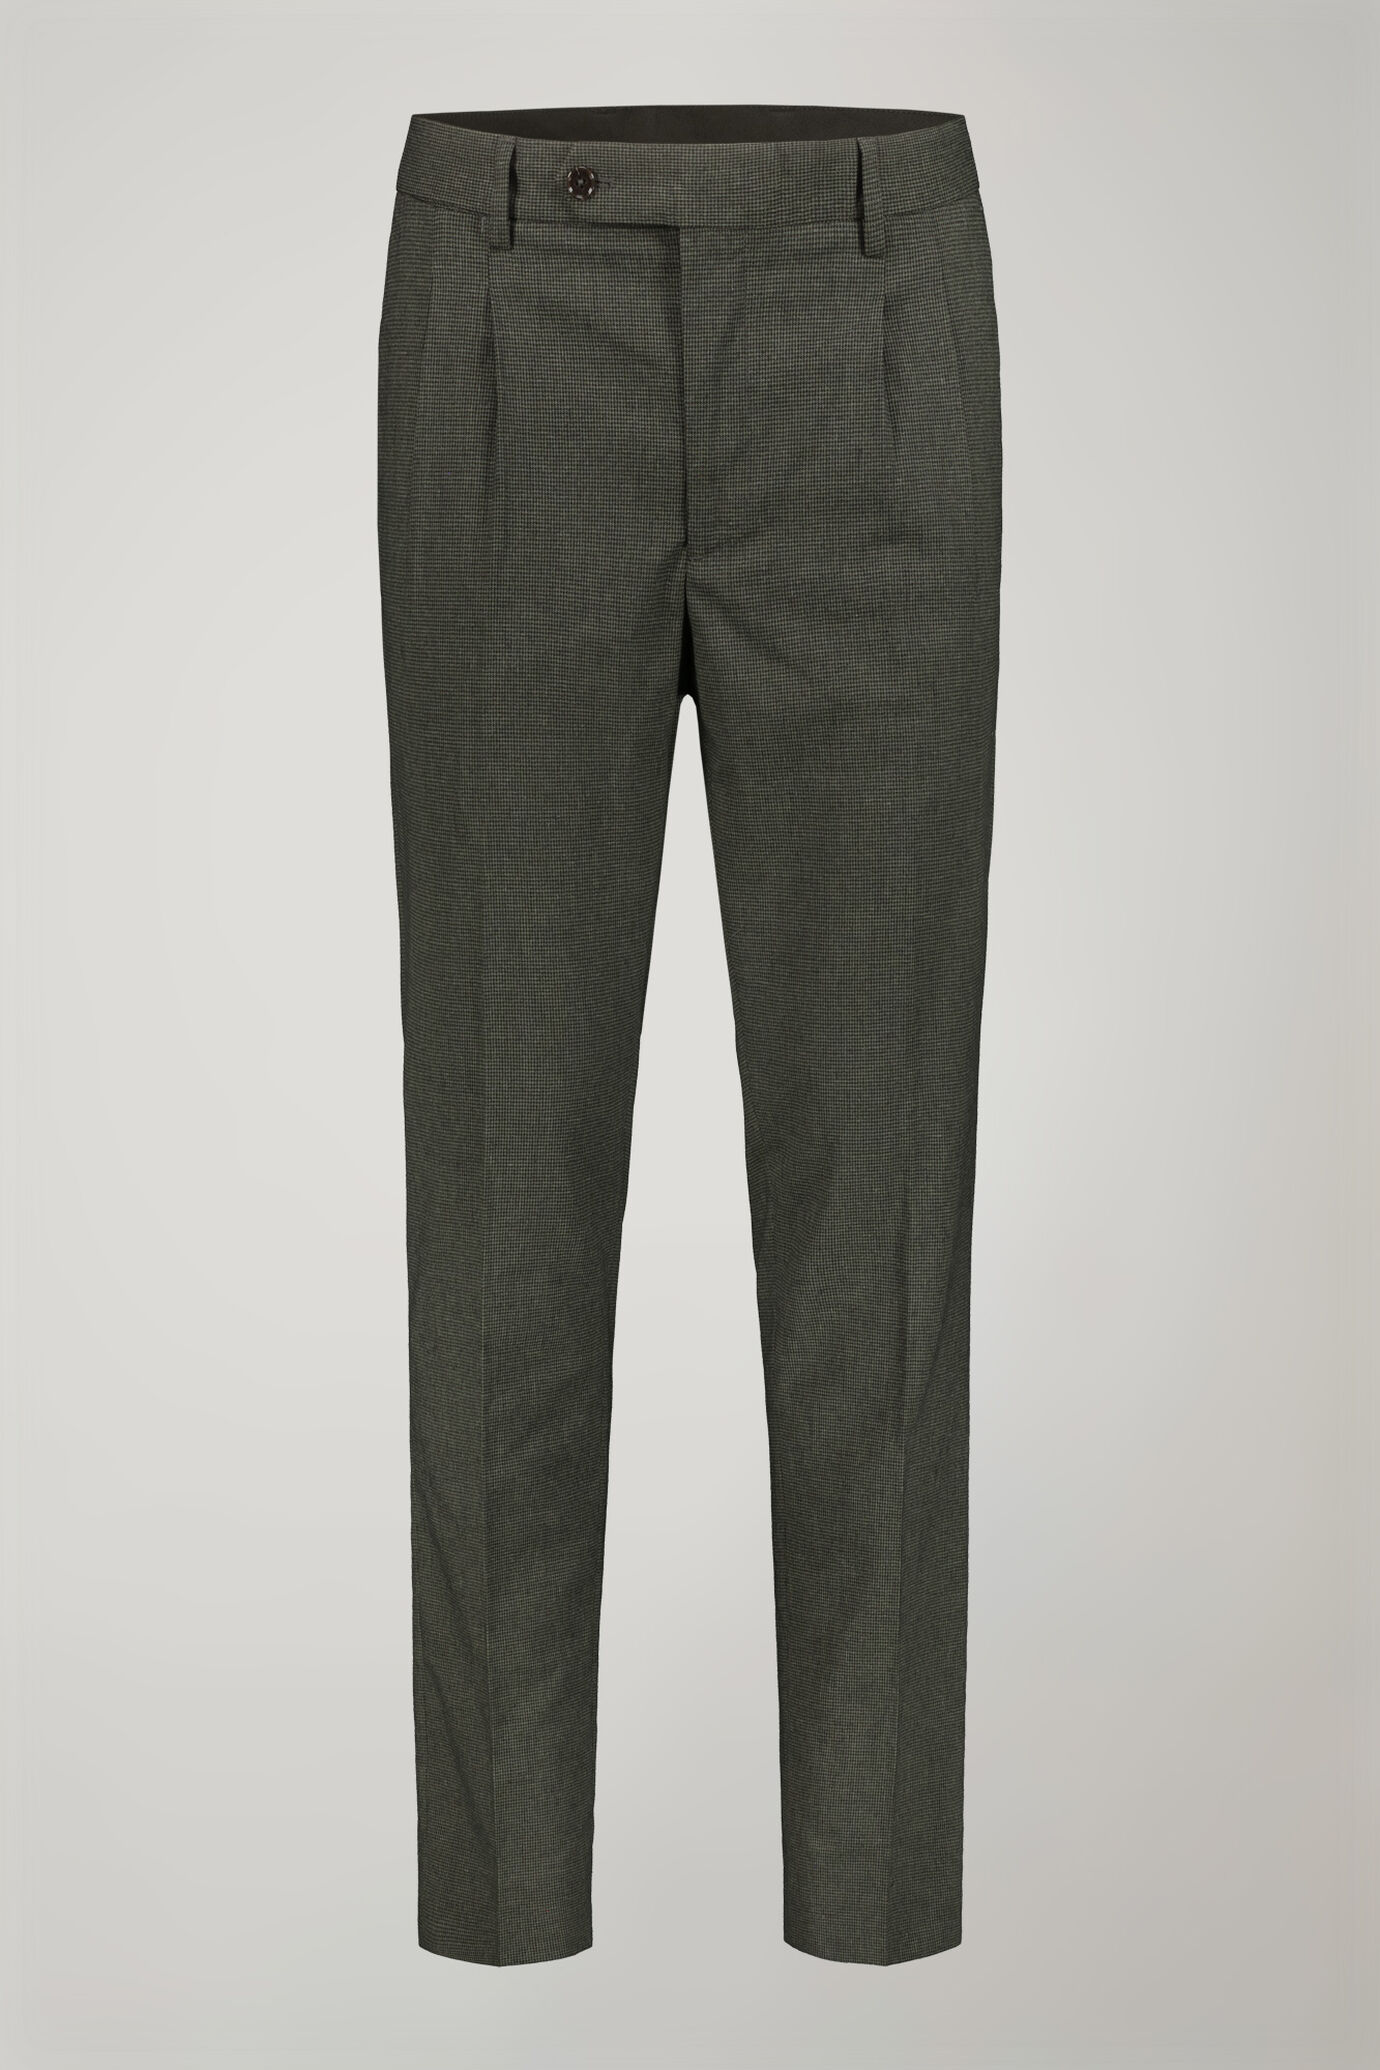 Pantalone classico uomo con doppia pince tessuto con disegno micro pied de poule regular fit image number 4